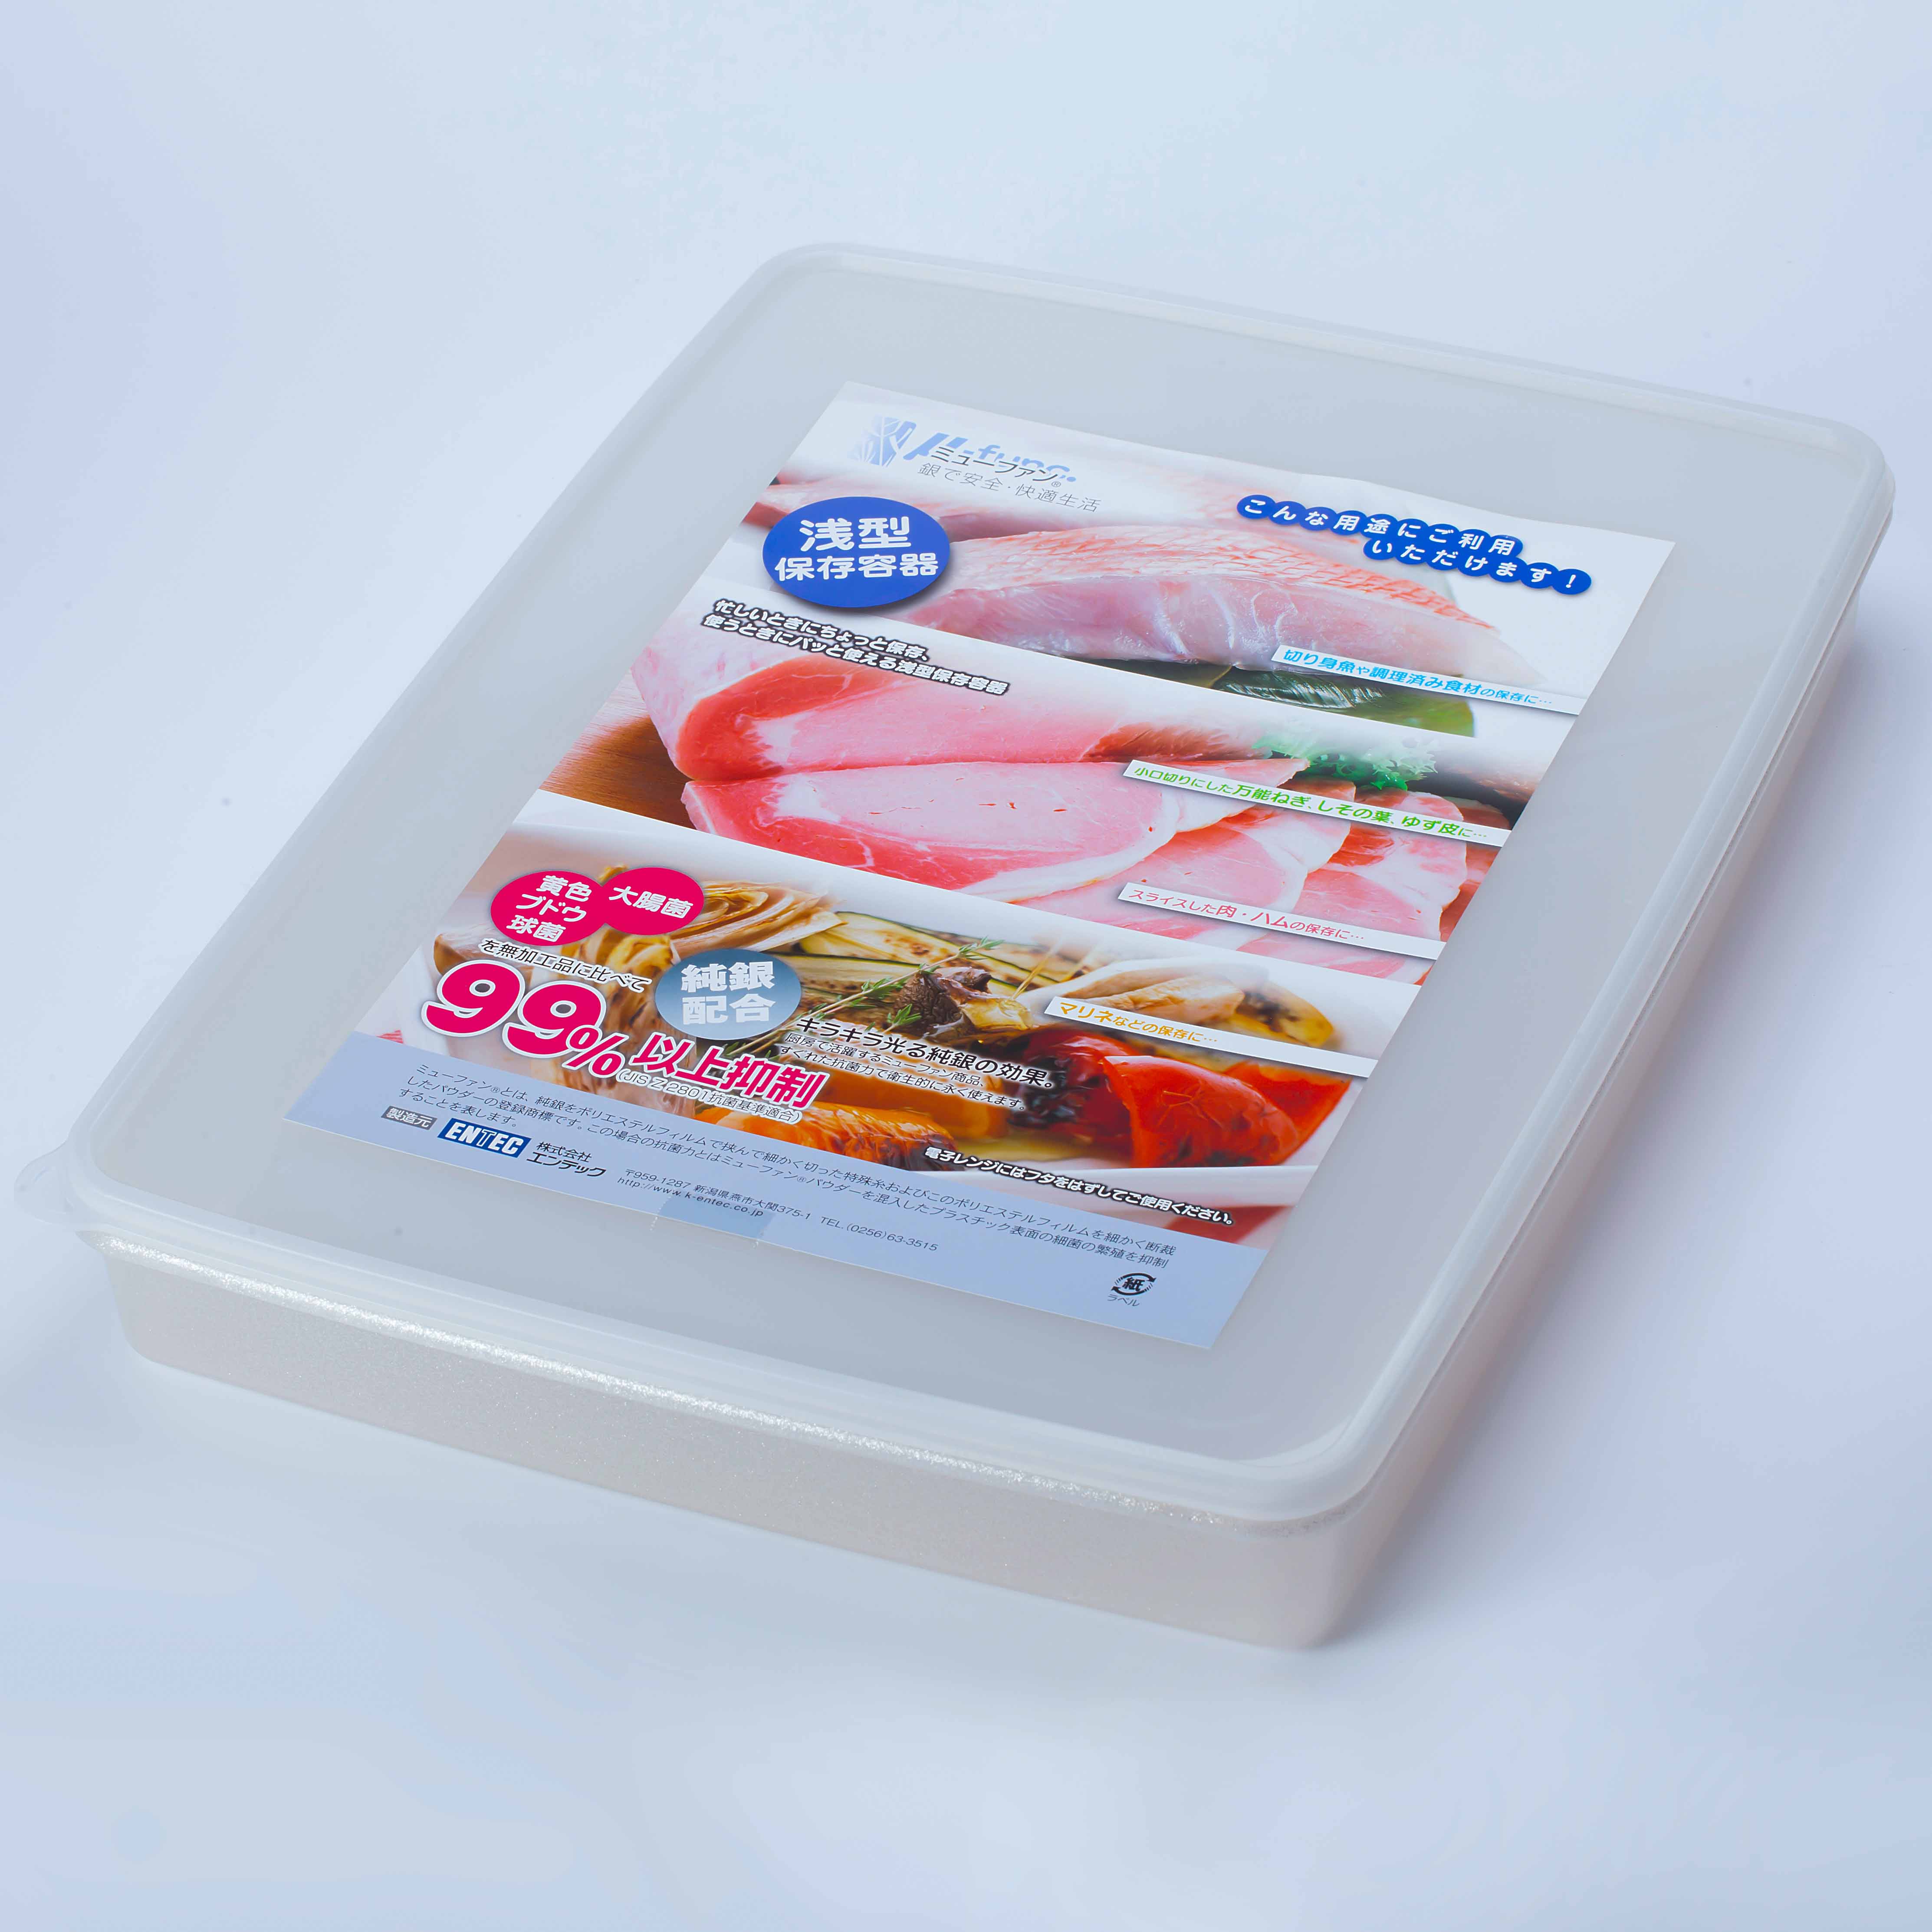 日本製mju-func®妙屋房銀纖維銀離子薄型抗菌保鮮盒T7-M138